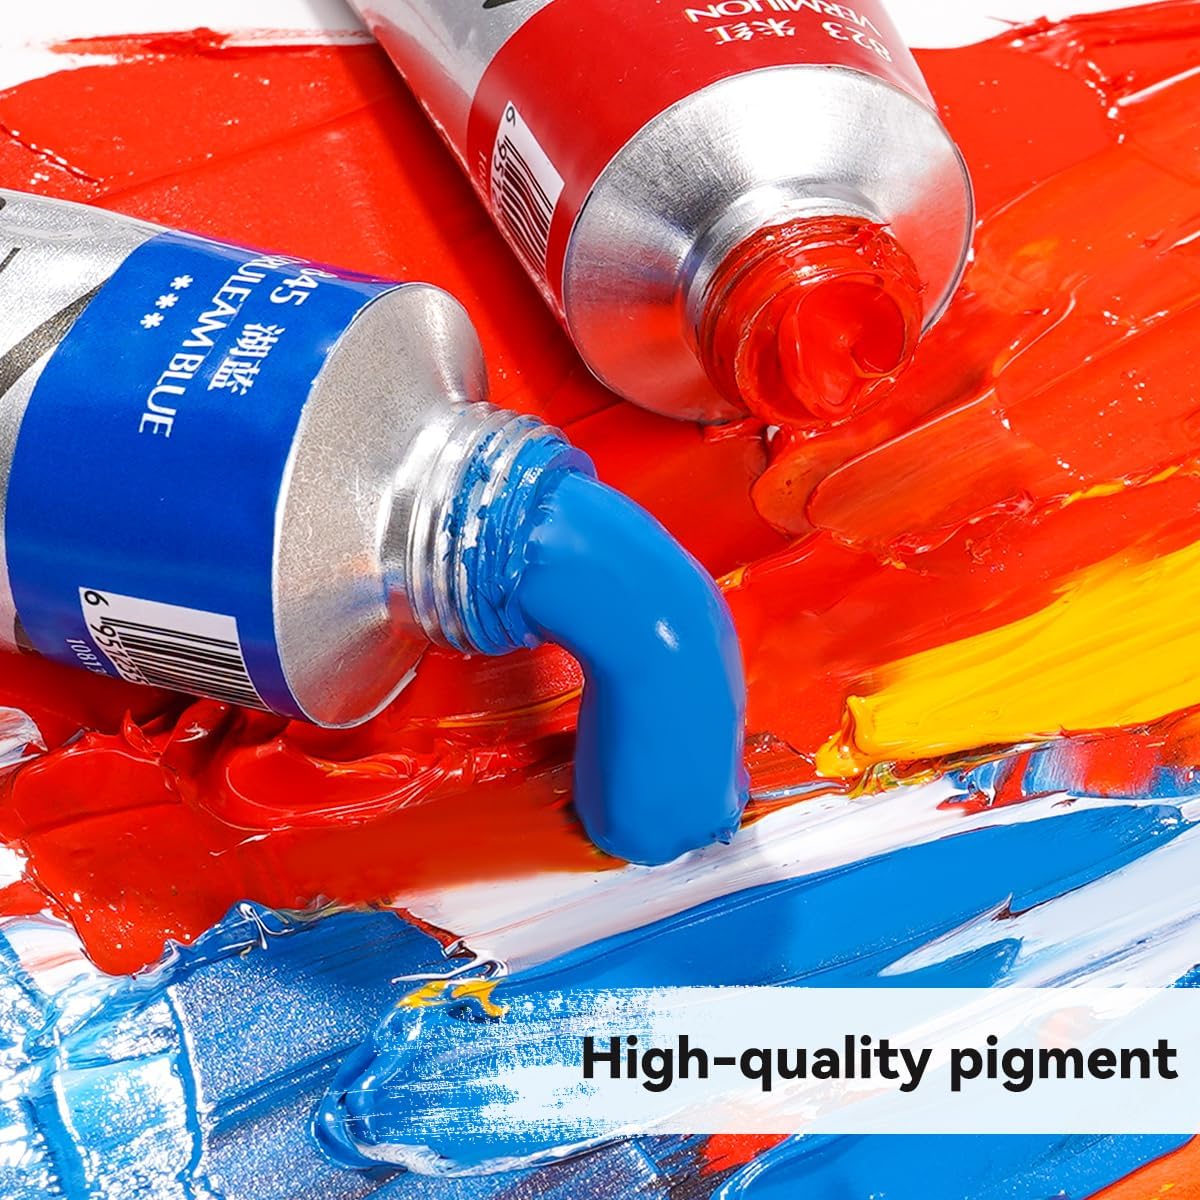 Paul Rubens Professionelle Ölfarbe, 20 Farben * 50 ml große Tuben, mit hoher Sättigung, cremiger Textur und Konsistenz